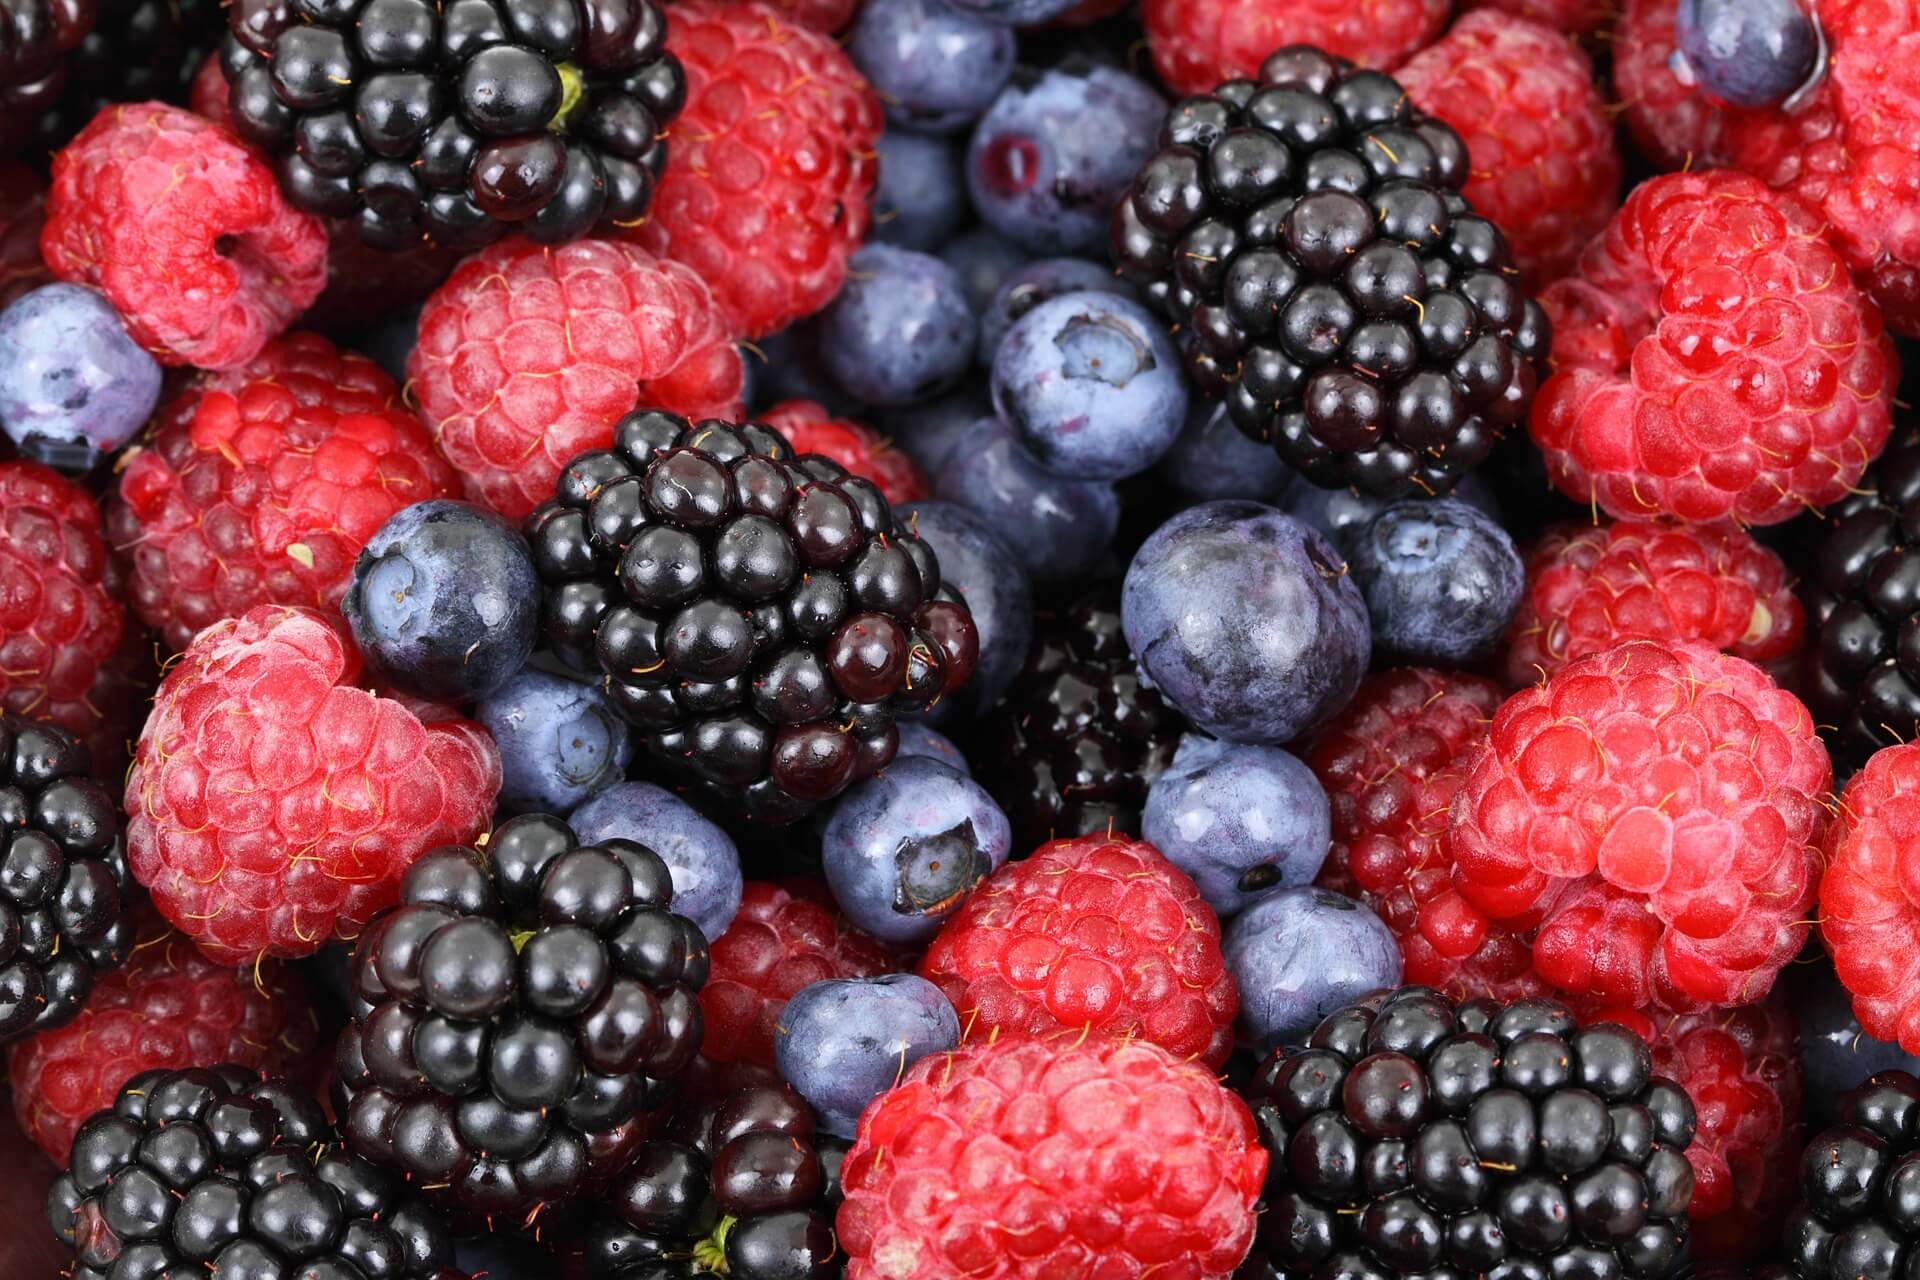 blackberries, blueberries and raspberries